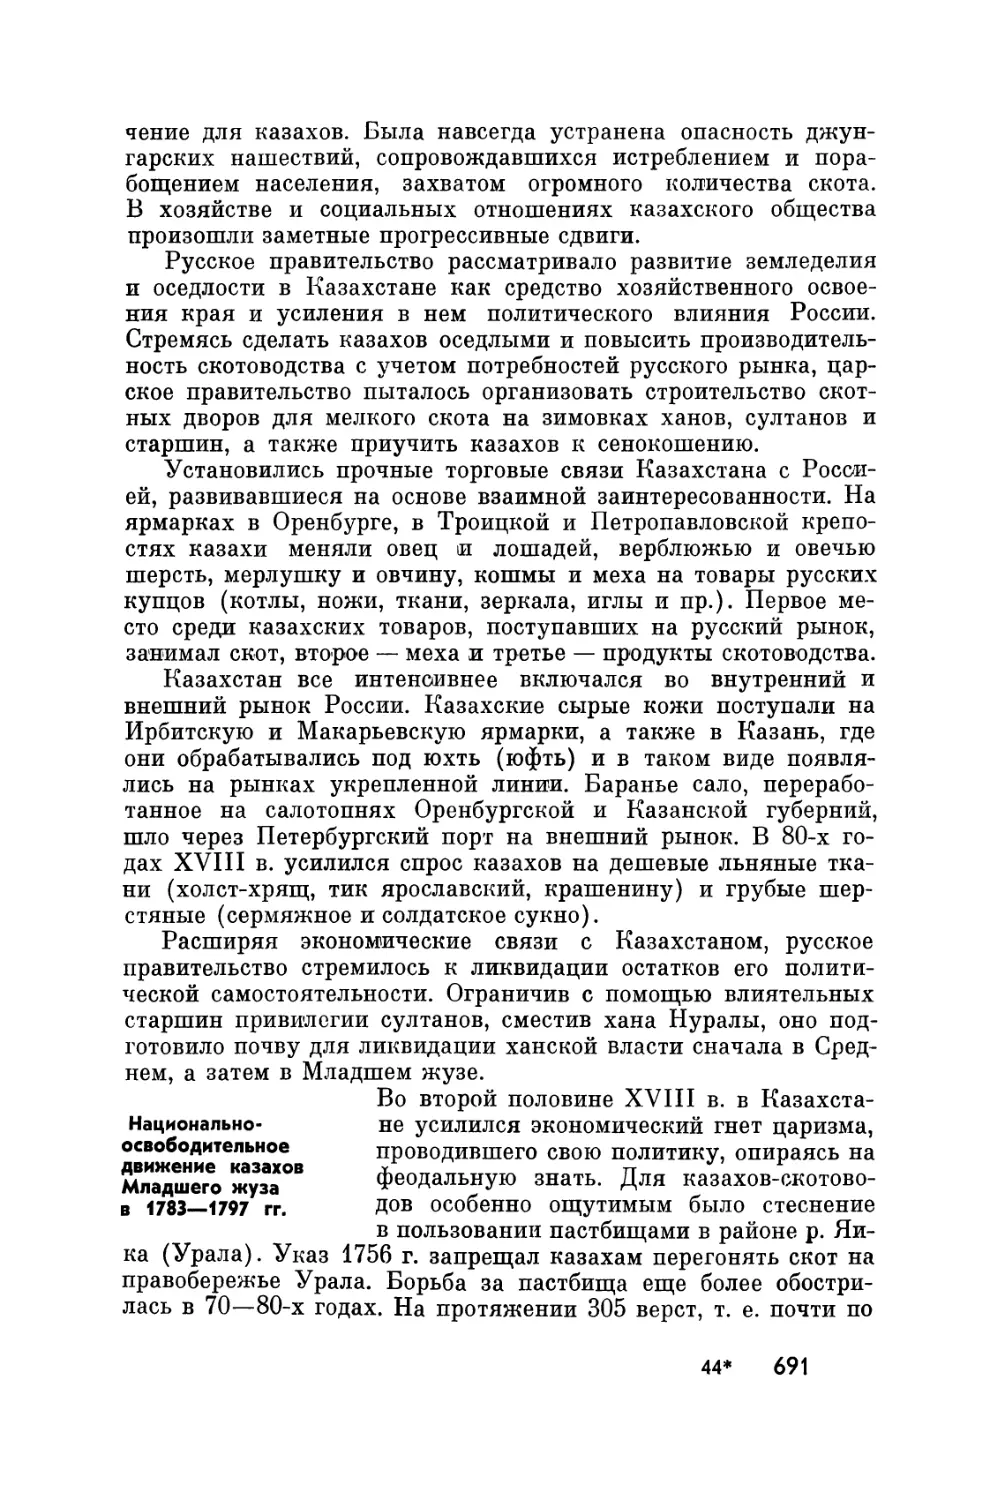 Национально-освободительное движение казахов Младшего жуза в 1783-1797 гг.